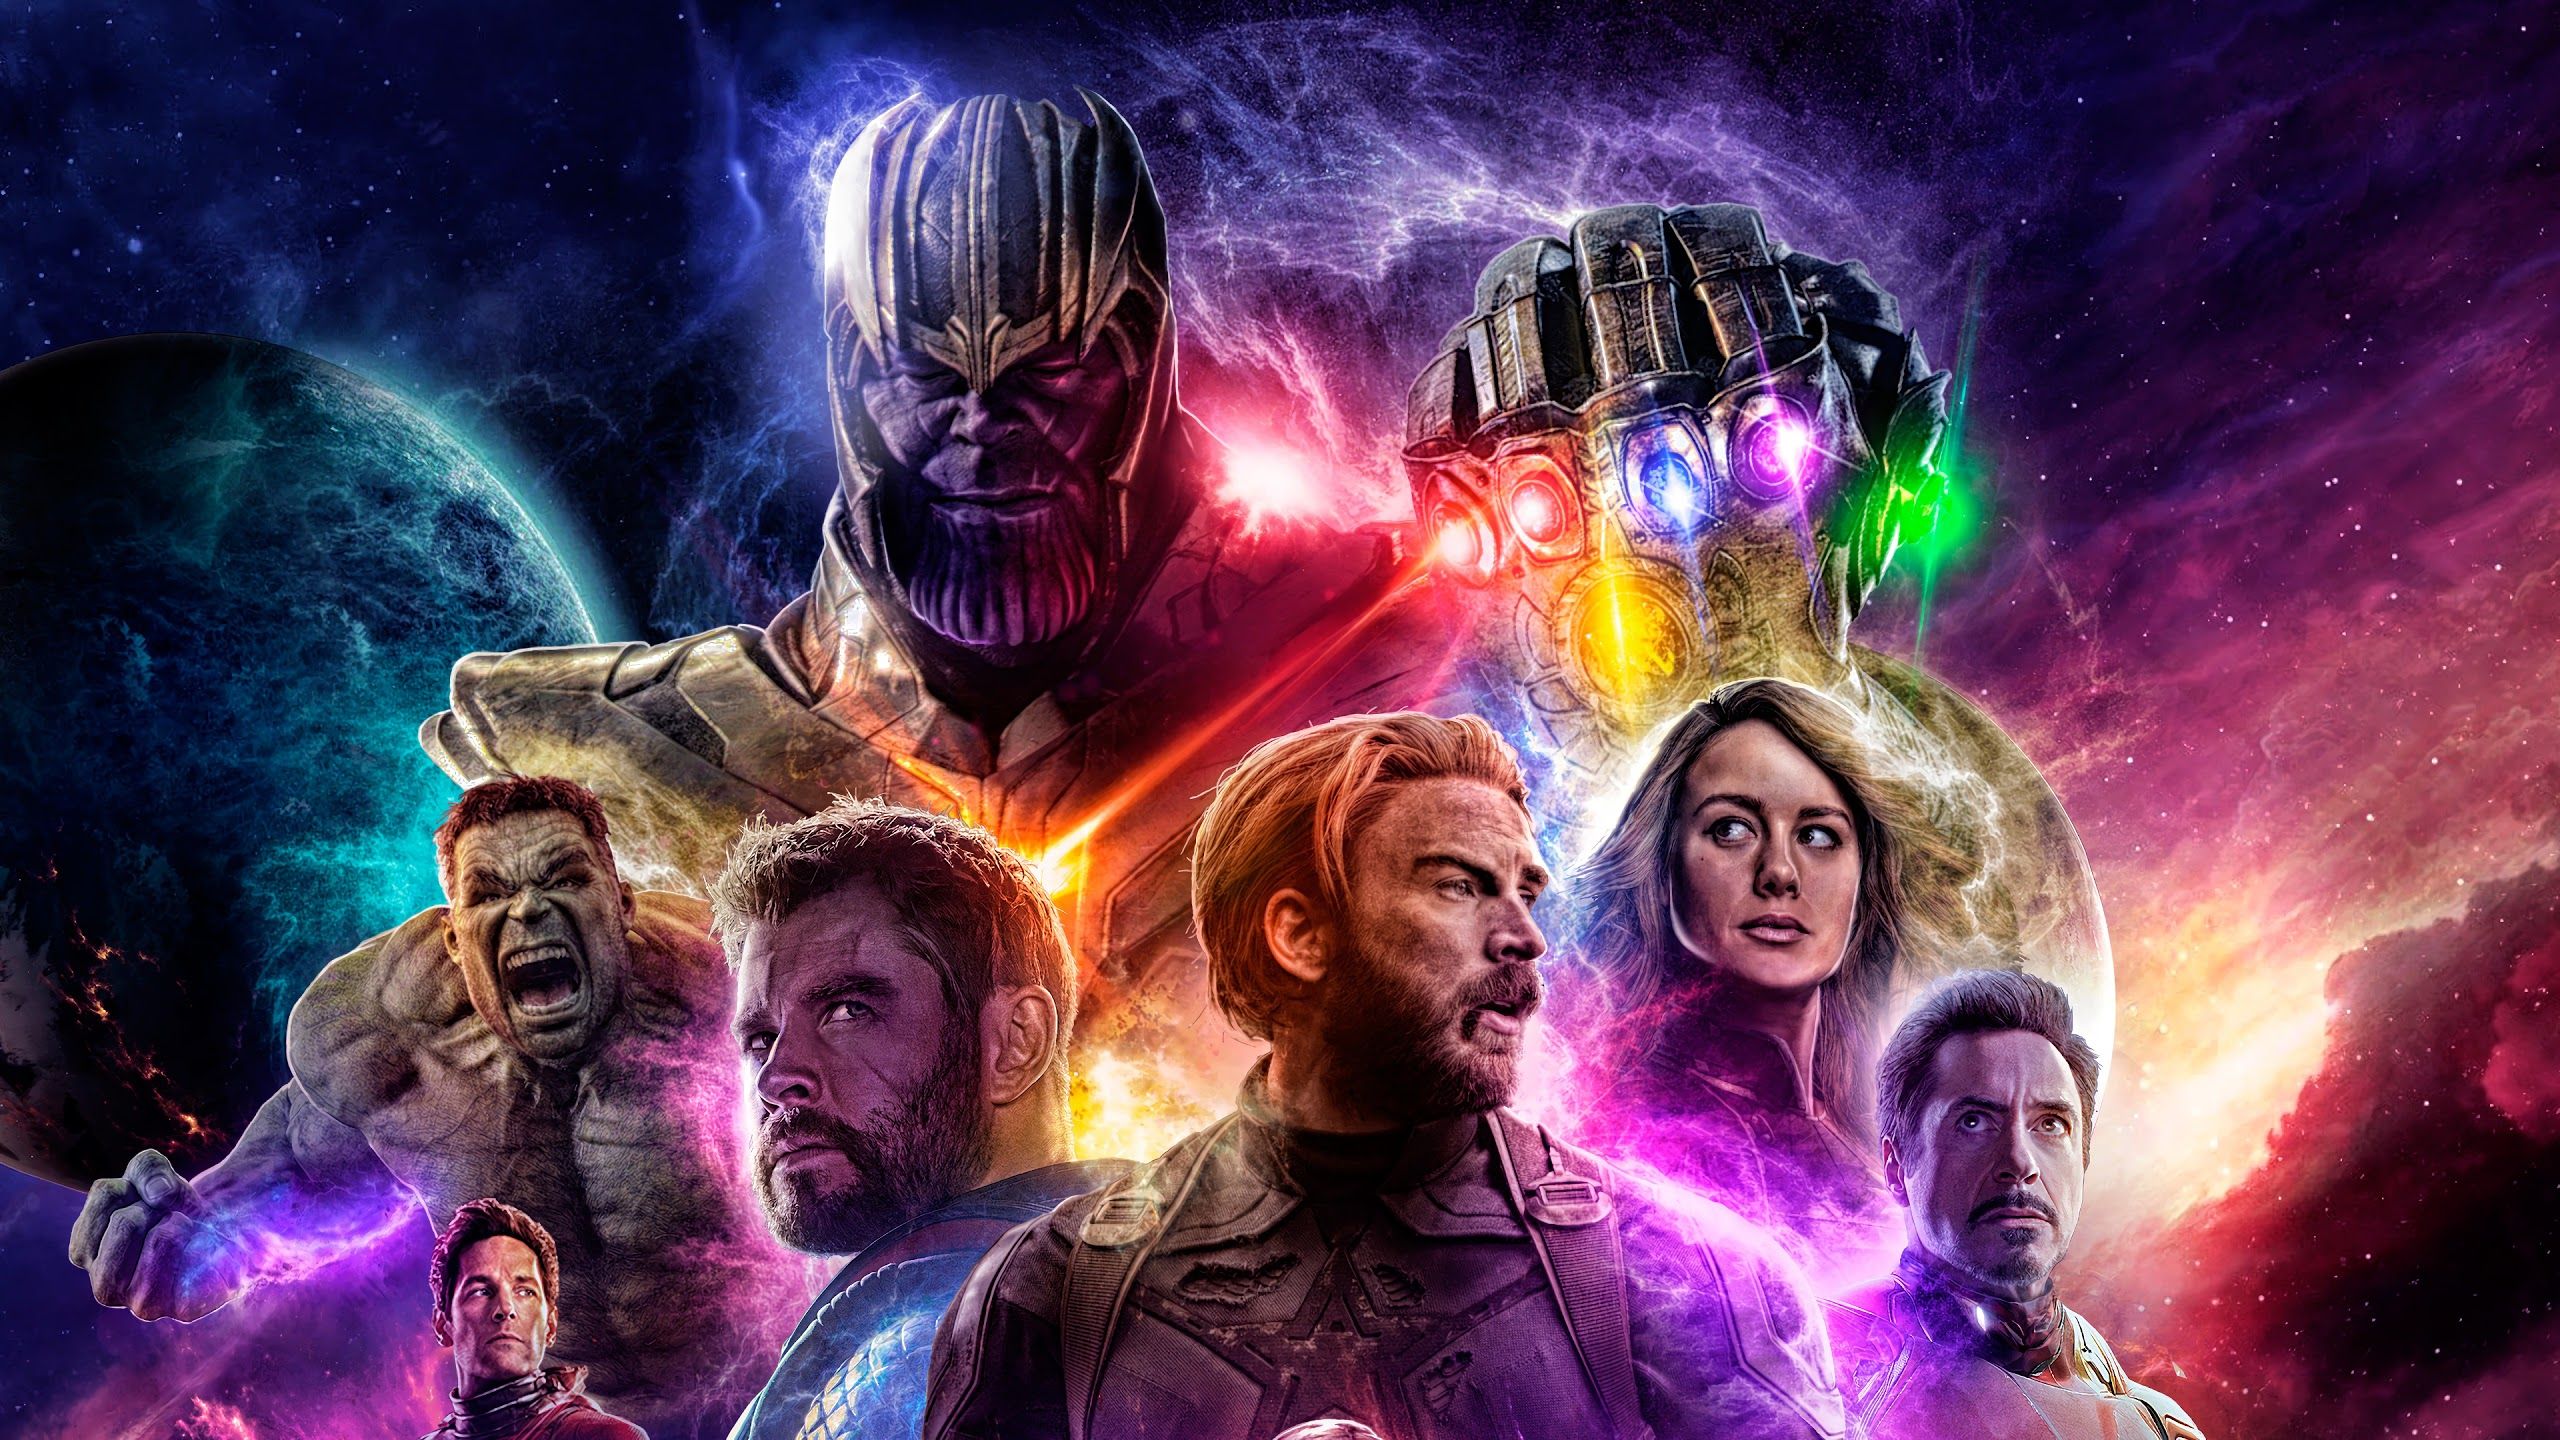 Thanos Infinity Gauntlet Avengers: Endgame Cast 4K Wallpaper